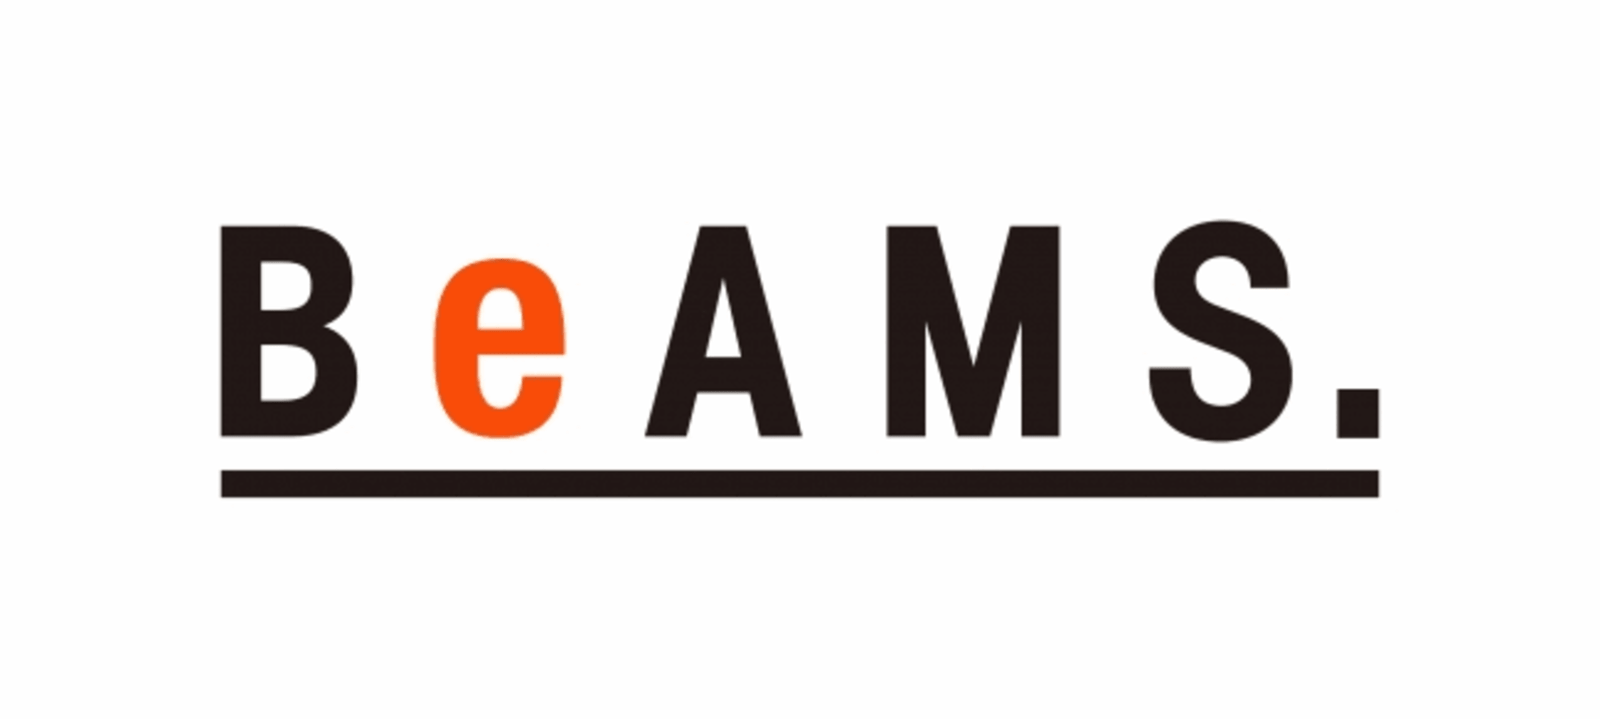 ビームスがz世代向けのオンライン専用レーベル Beams Dot ビームスドット Ec責任者は24歳の入社1年目社員 ネットショップ担当者フォーラム